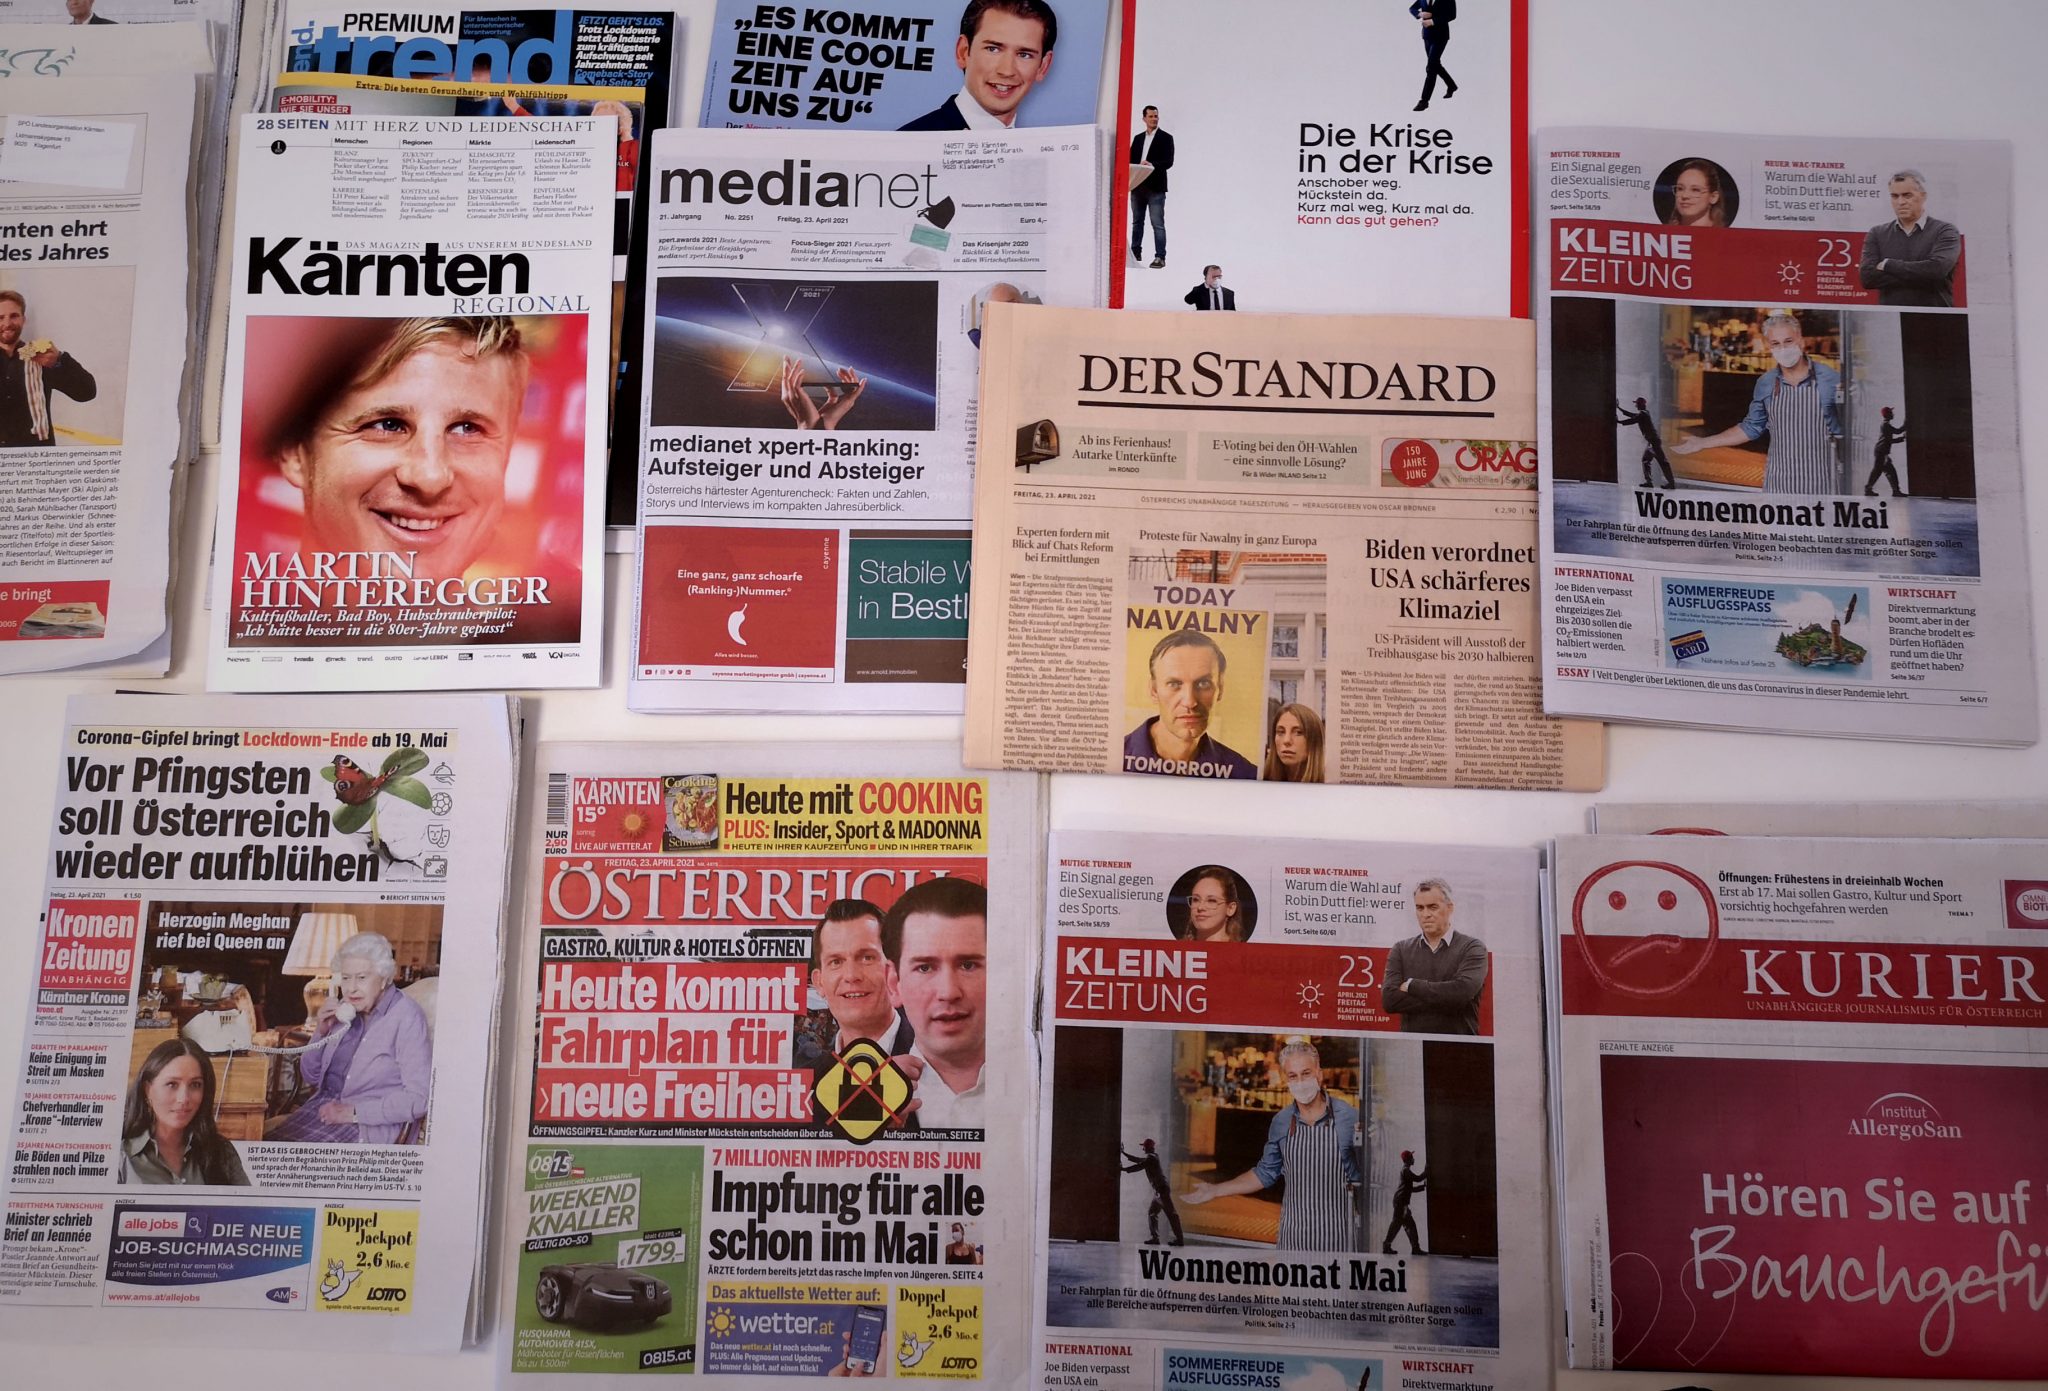 „Mit der Pressefreiheit in Österreich steht es nicht zum Besten“, sagt Concordia-Preisträger Dieter Bornemann. Die Rede im Wortlaut